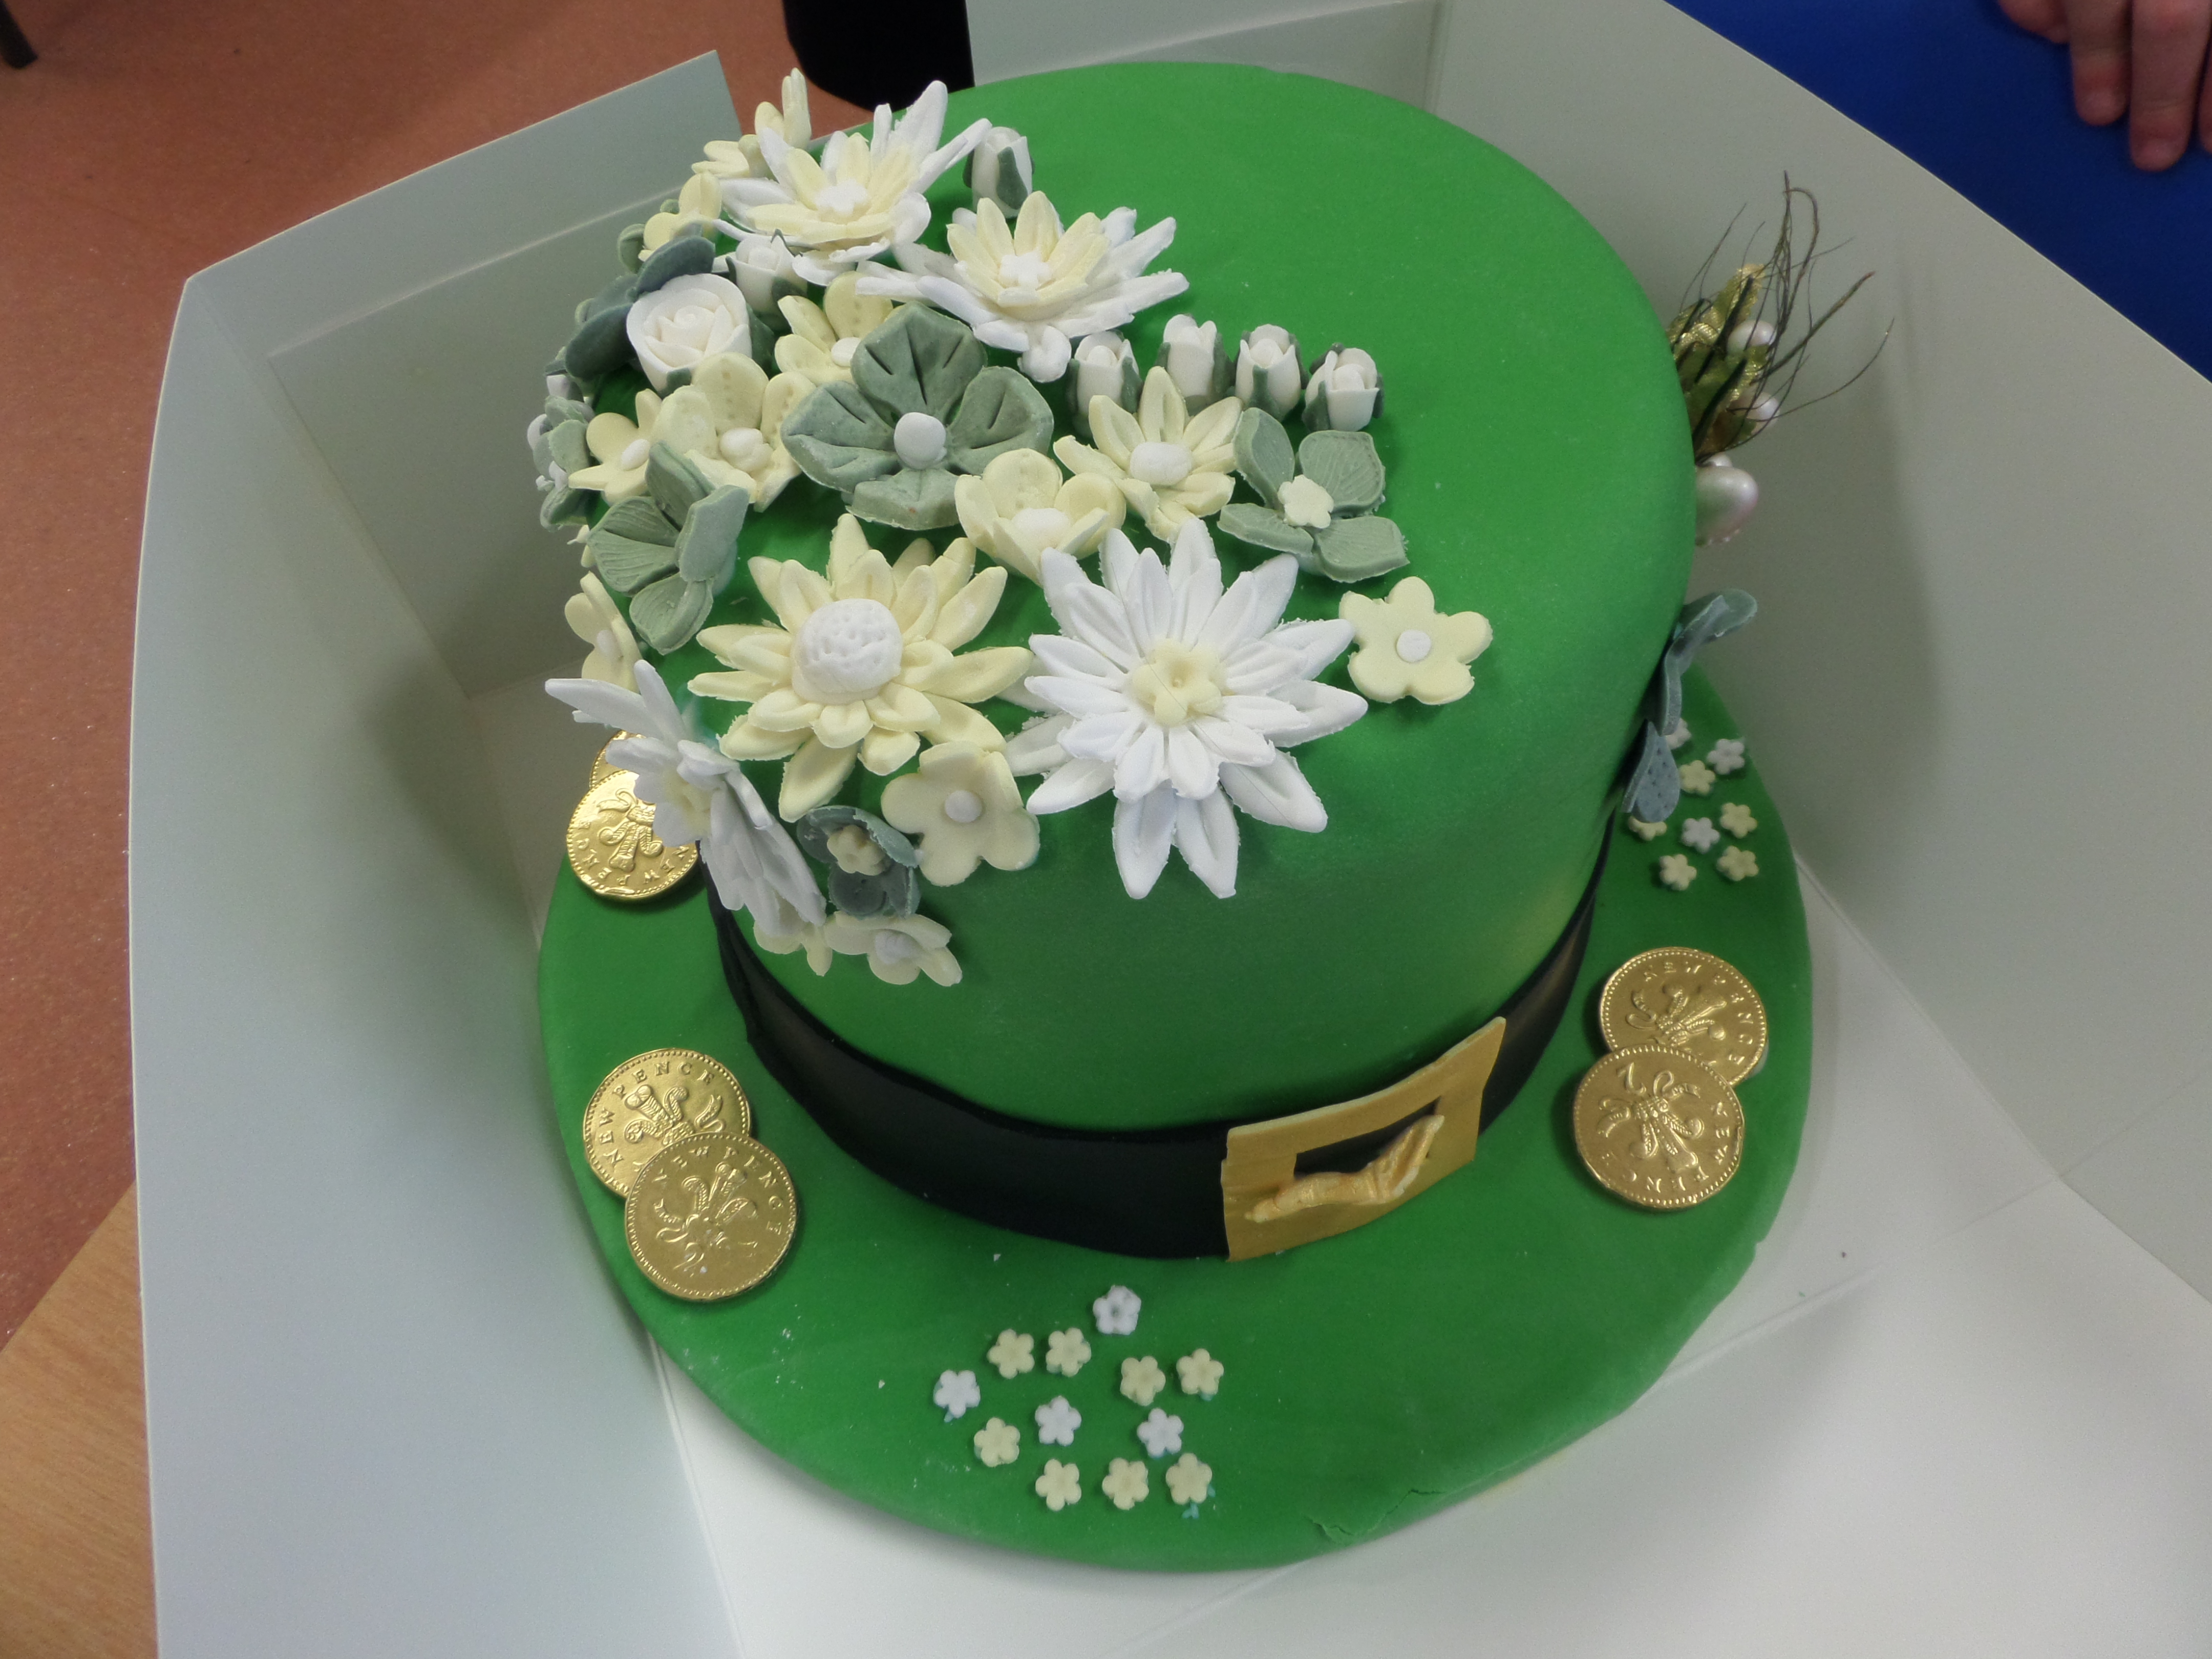 Irish hat cake